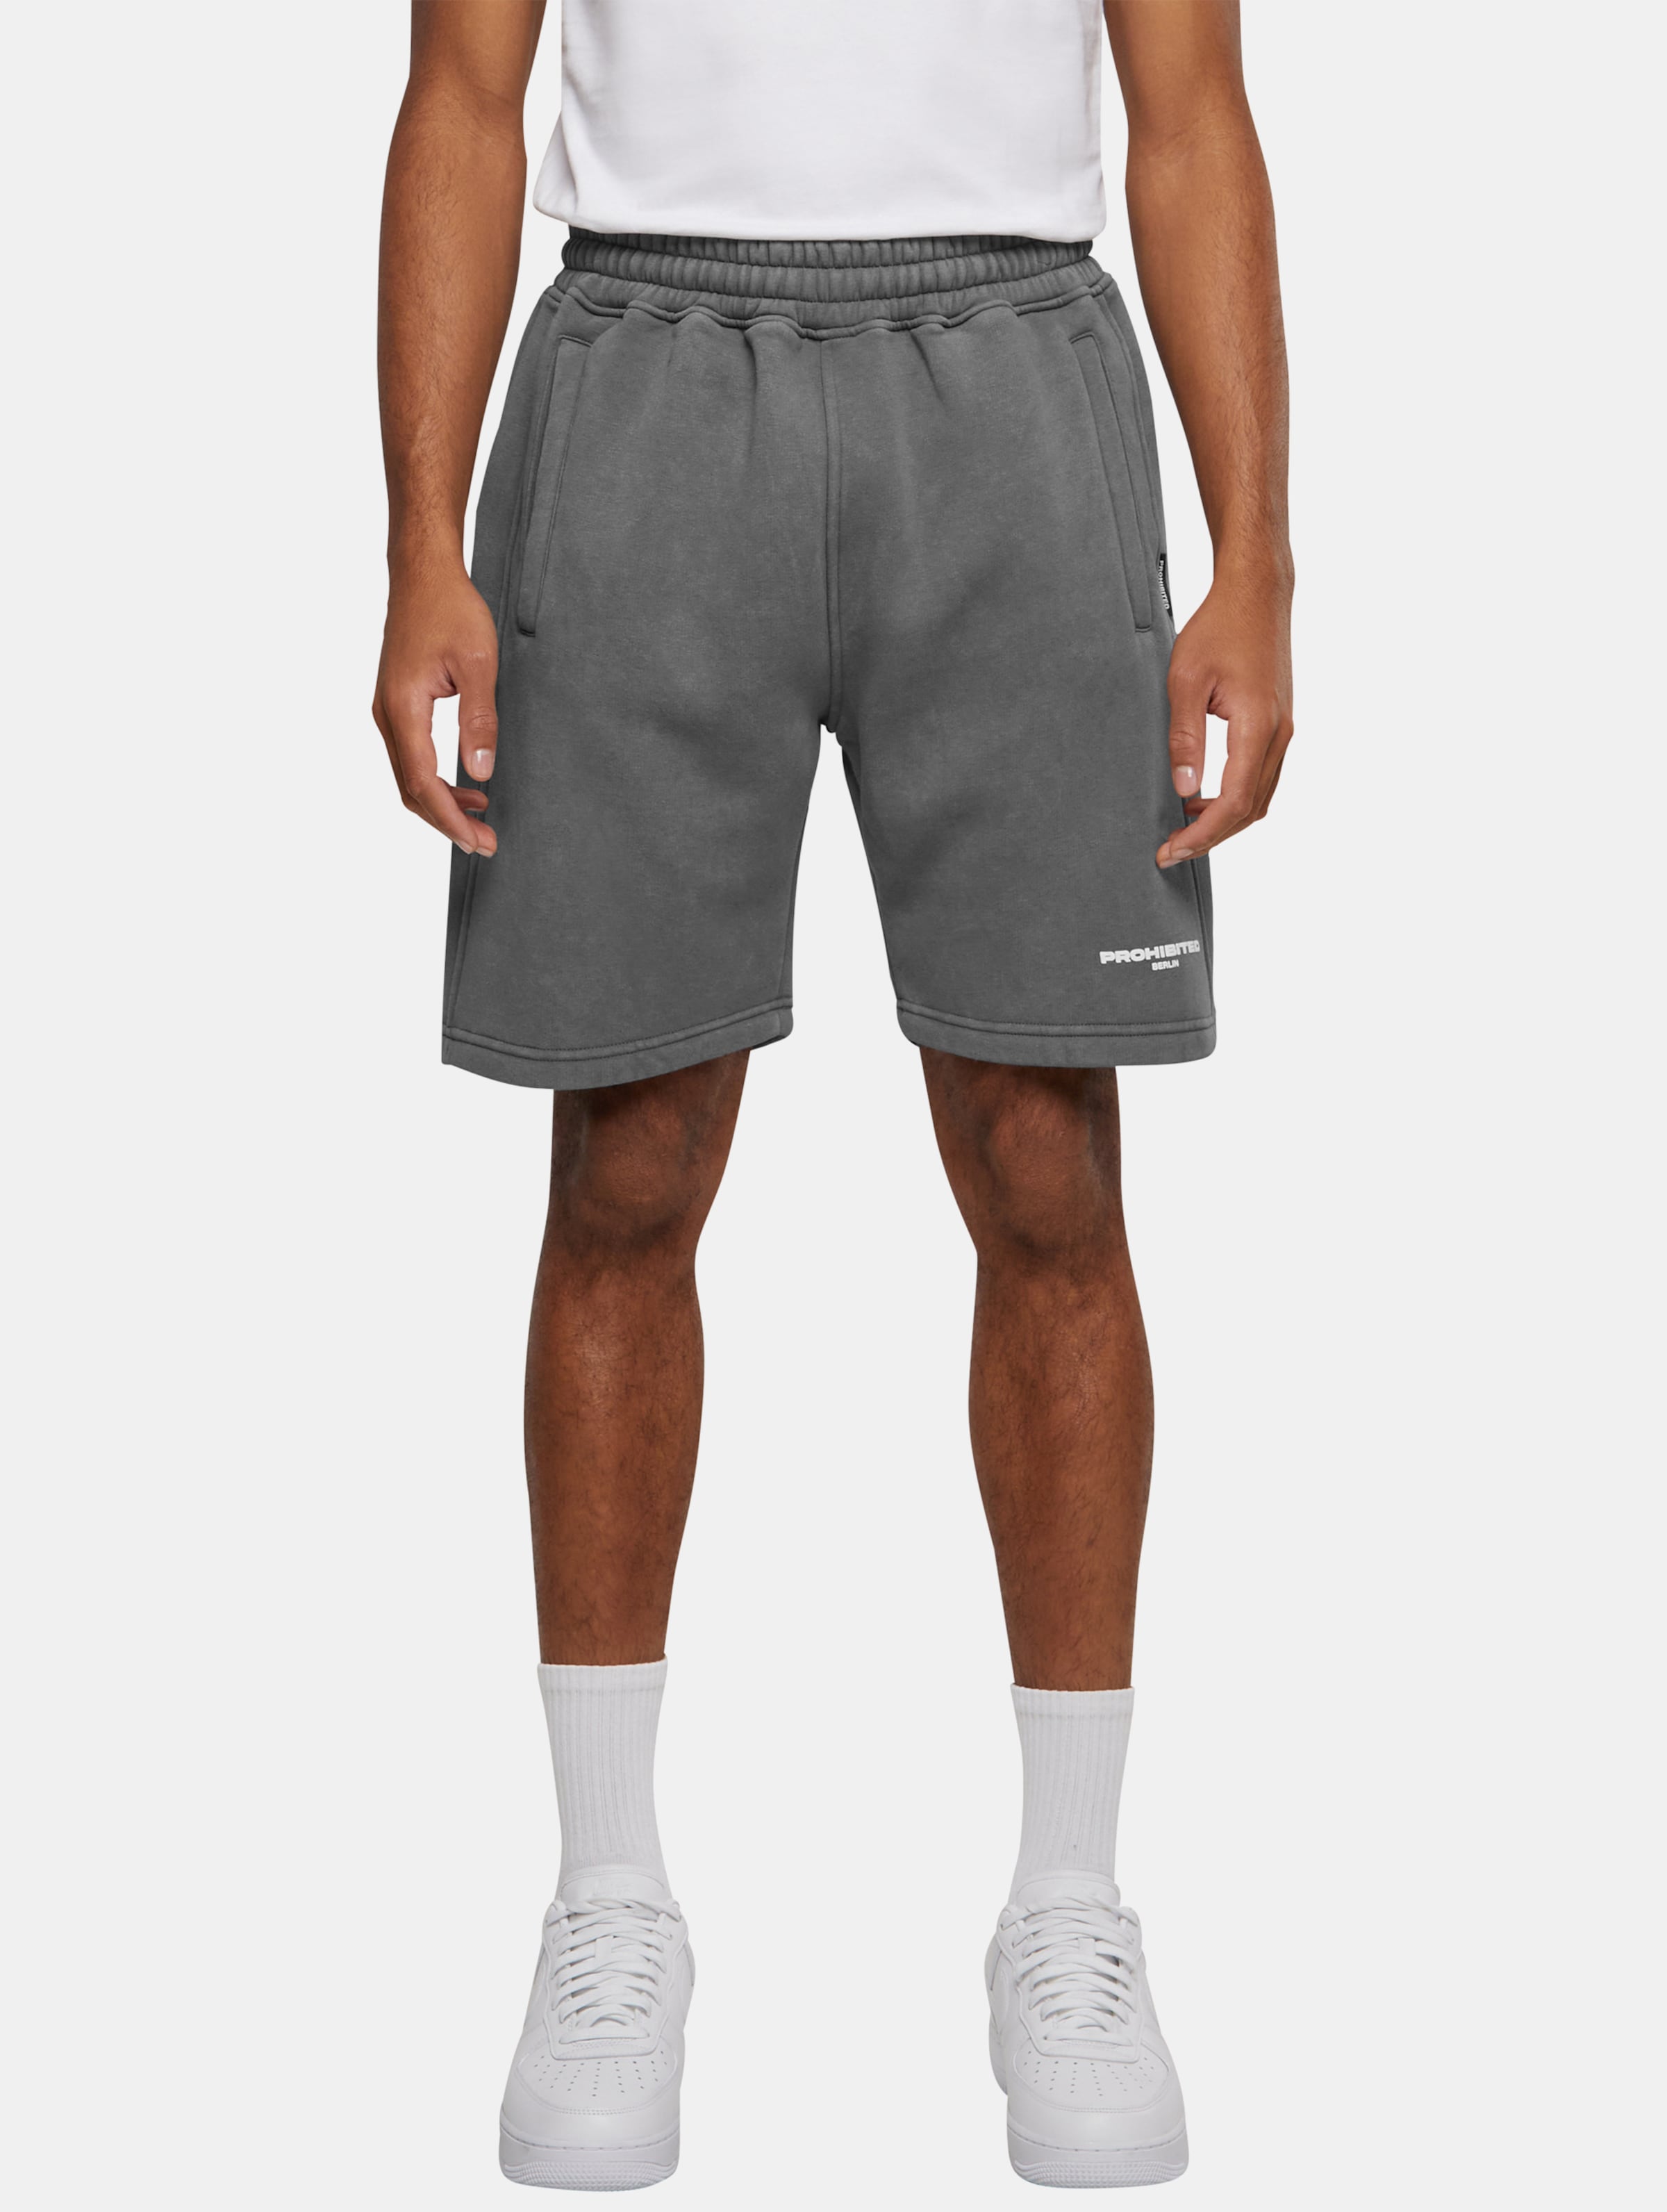 Prohibited Shorts Frauen,Männer,Unisex op kleur grijs, Maat XL